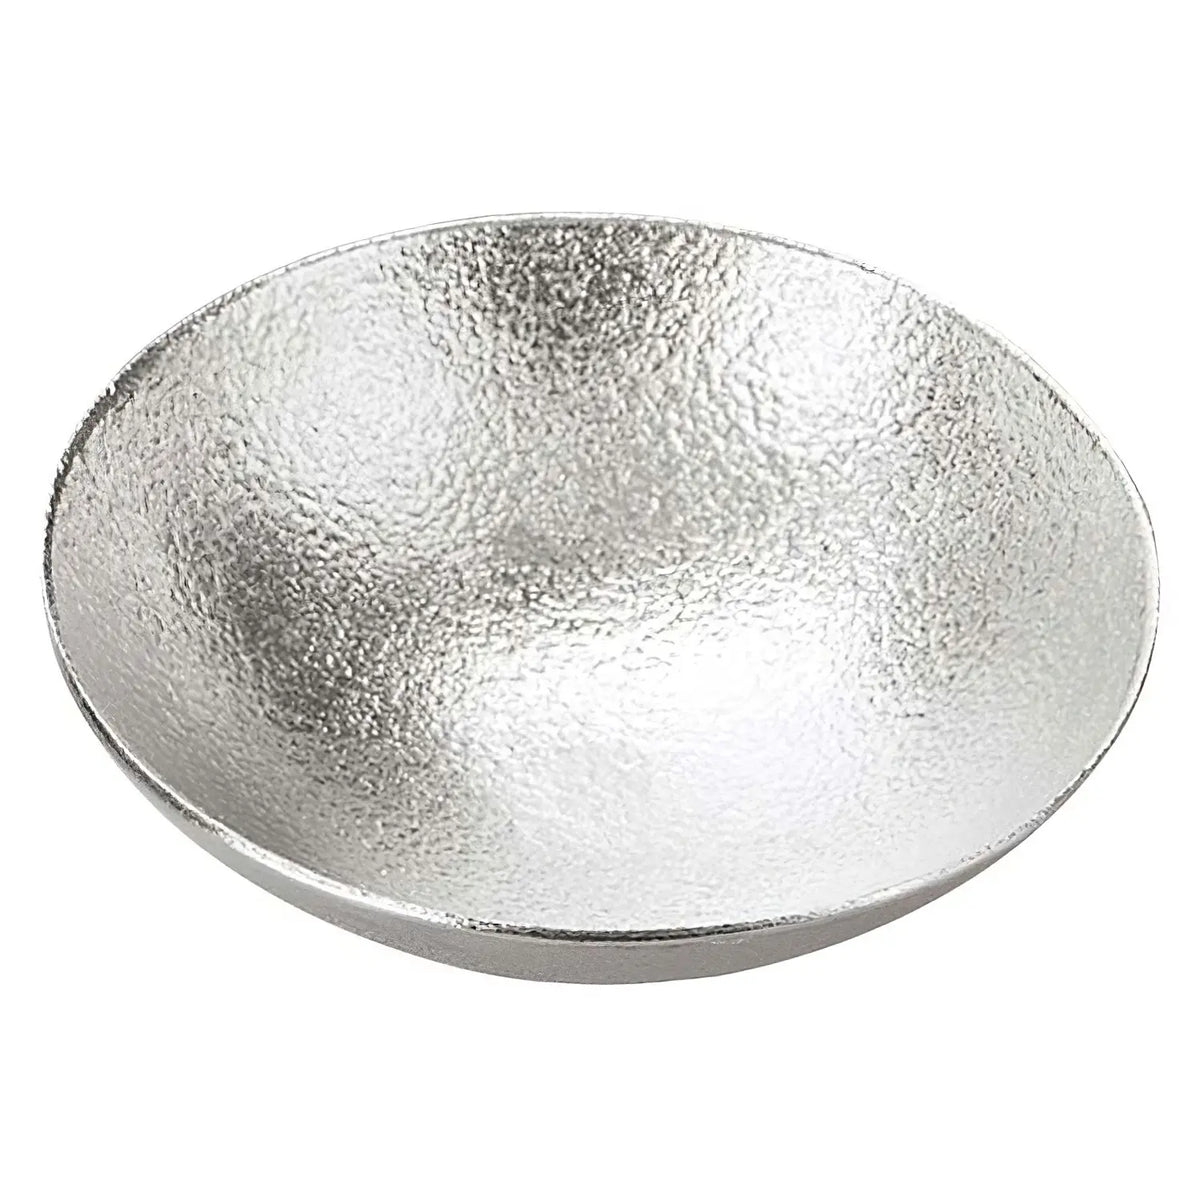 Nousaku Tinware Small Bowl Kuzushi Tare